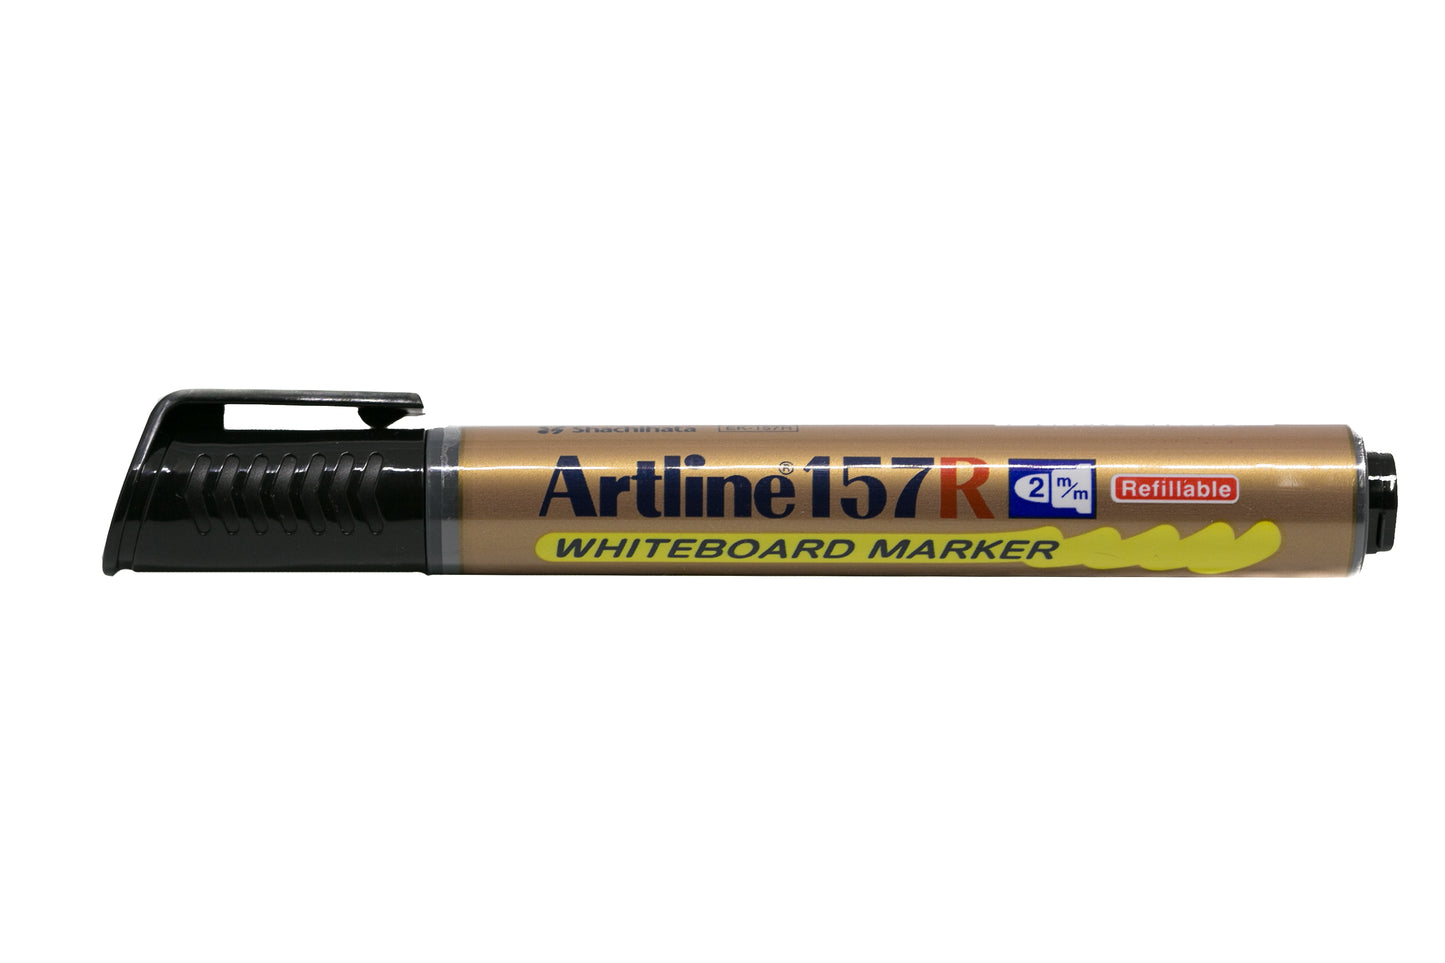 Artline Whiteboard Marker Refillable EK-157R 2mm Black